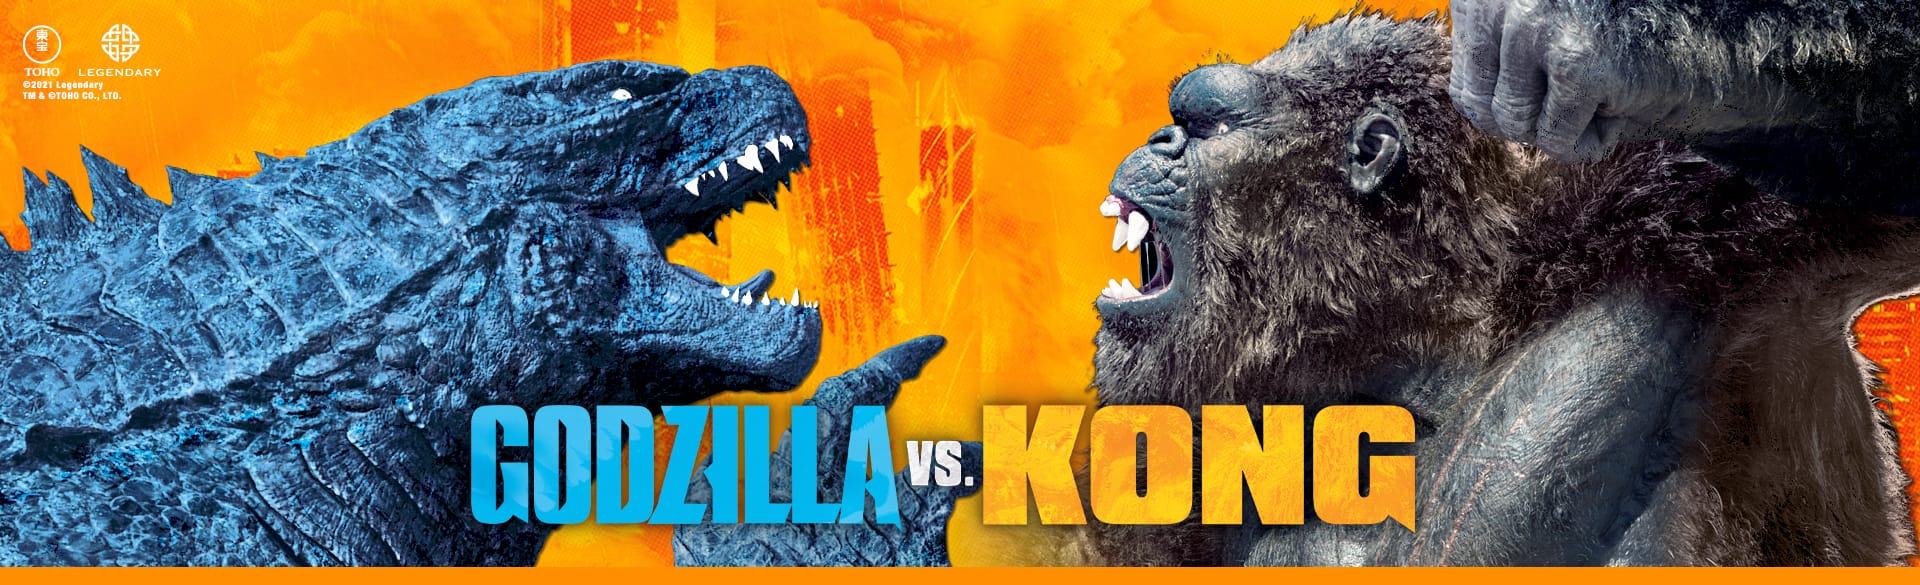 Image of Godzilla vs Kong